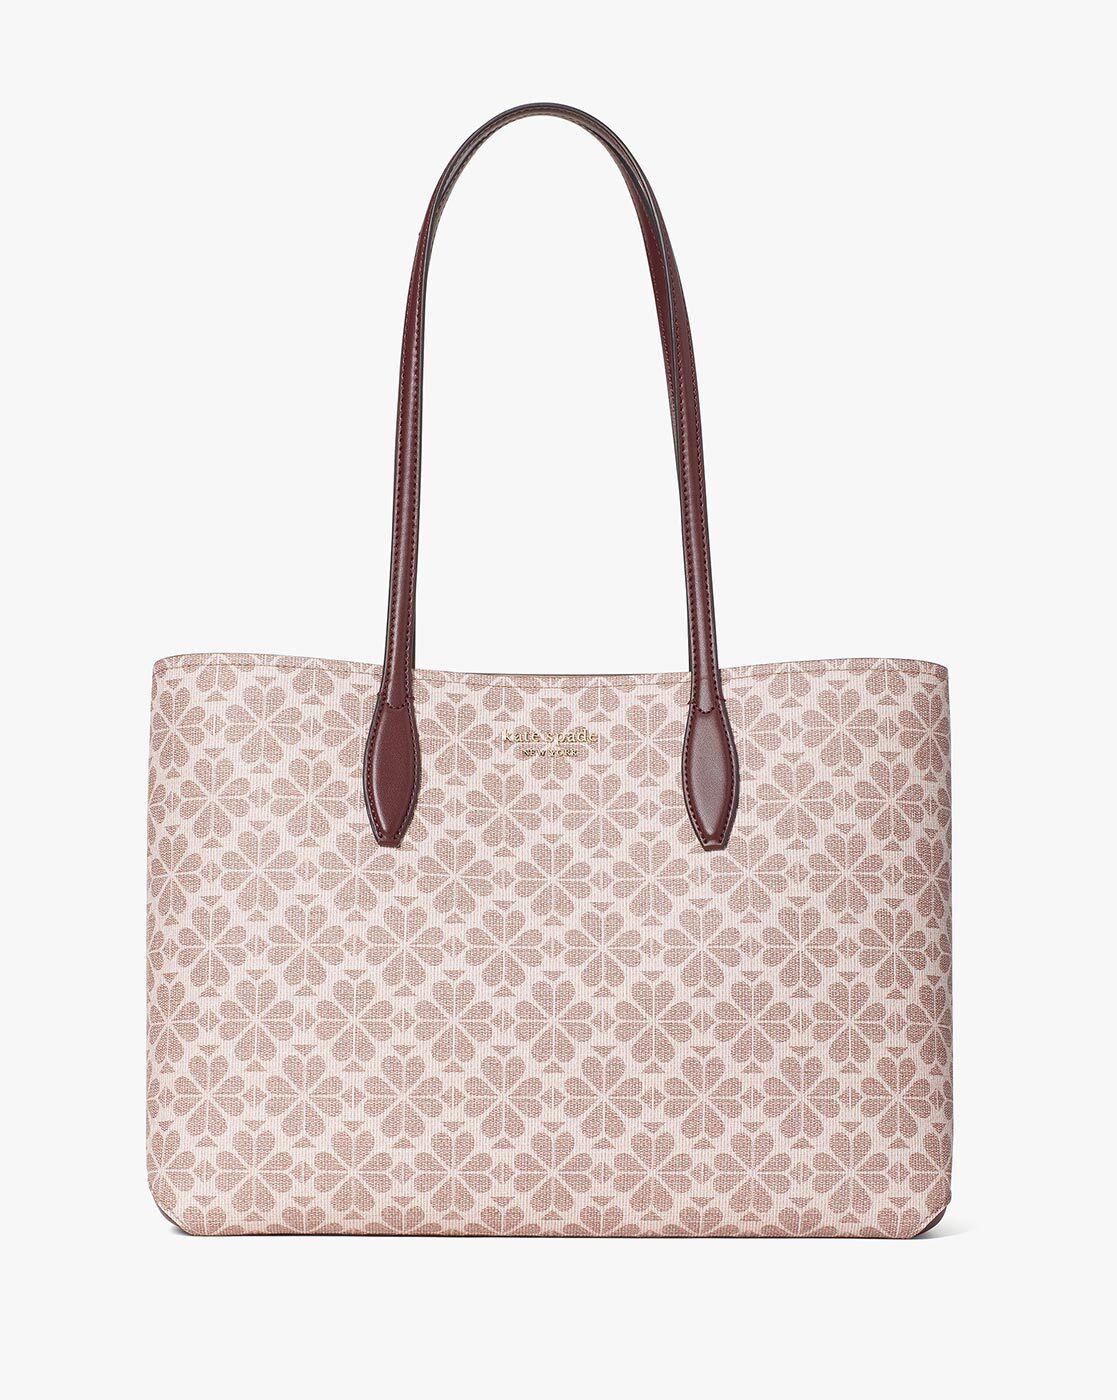 Buy Beige Handbags for Women by KATE SPADE Online 